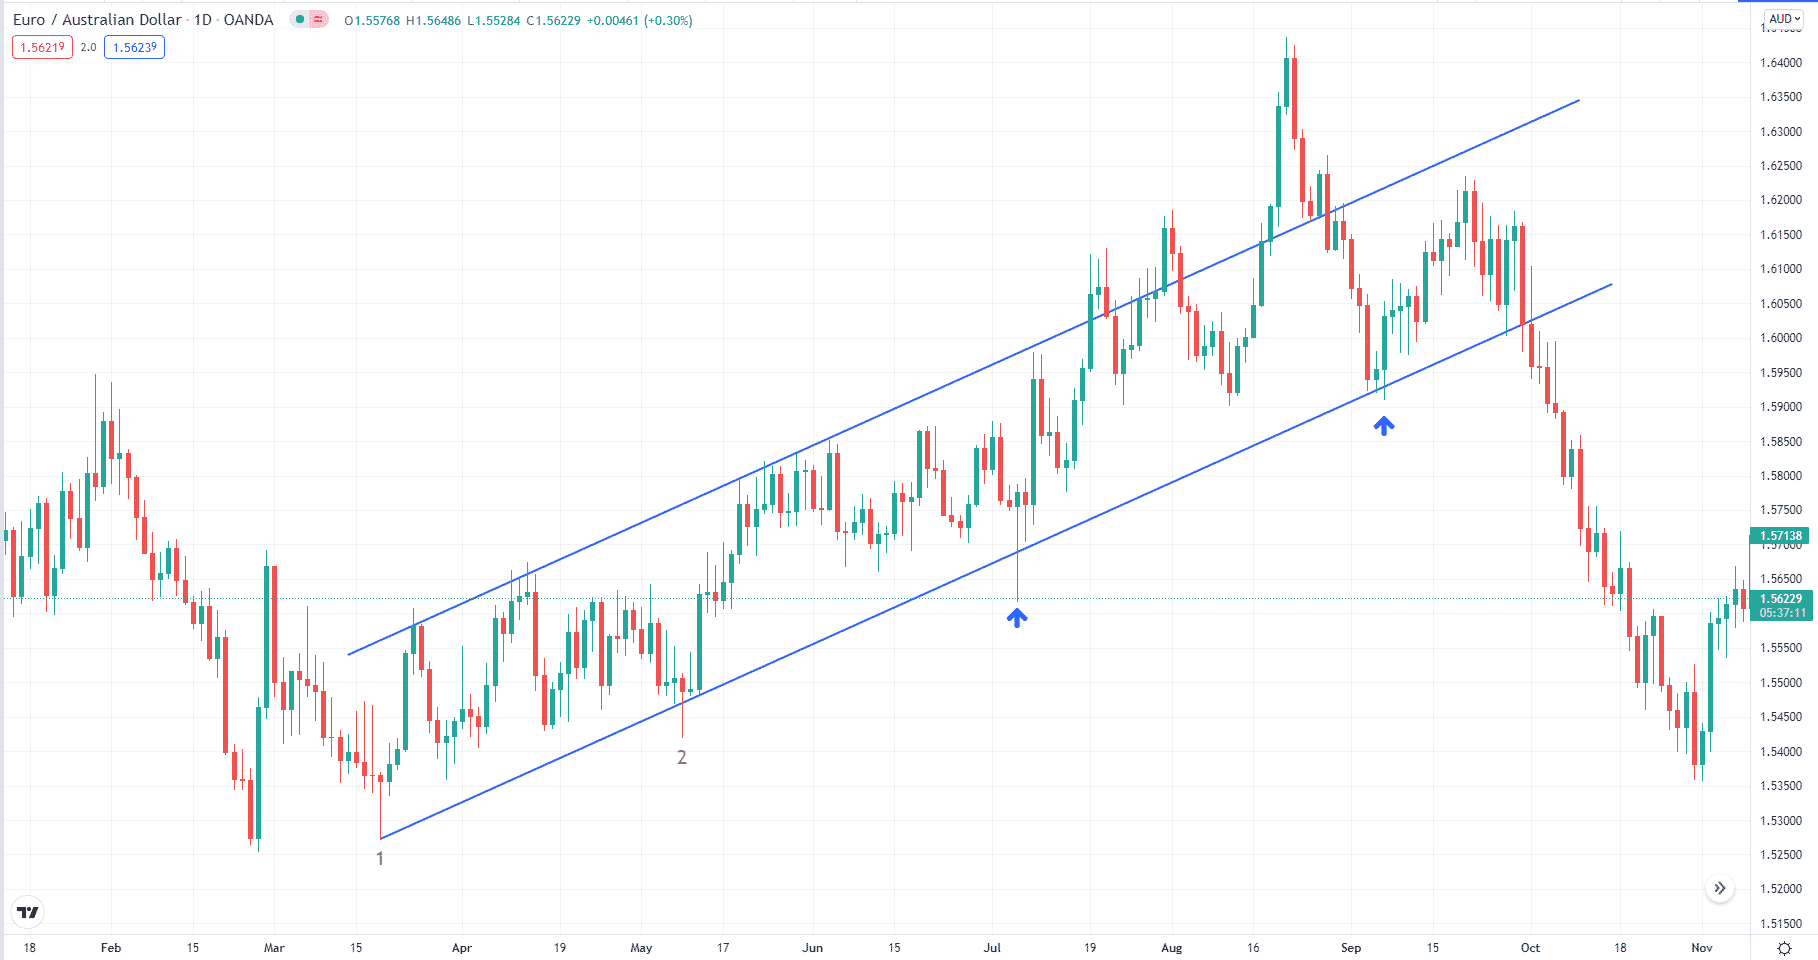 EUR/AUD ascending channel